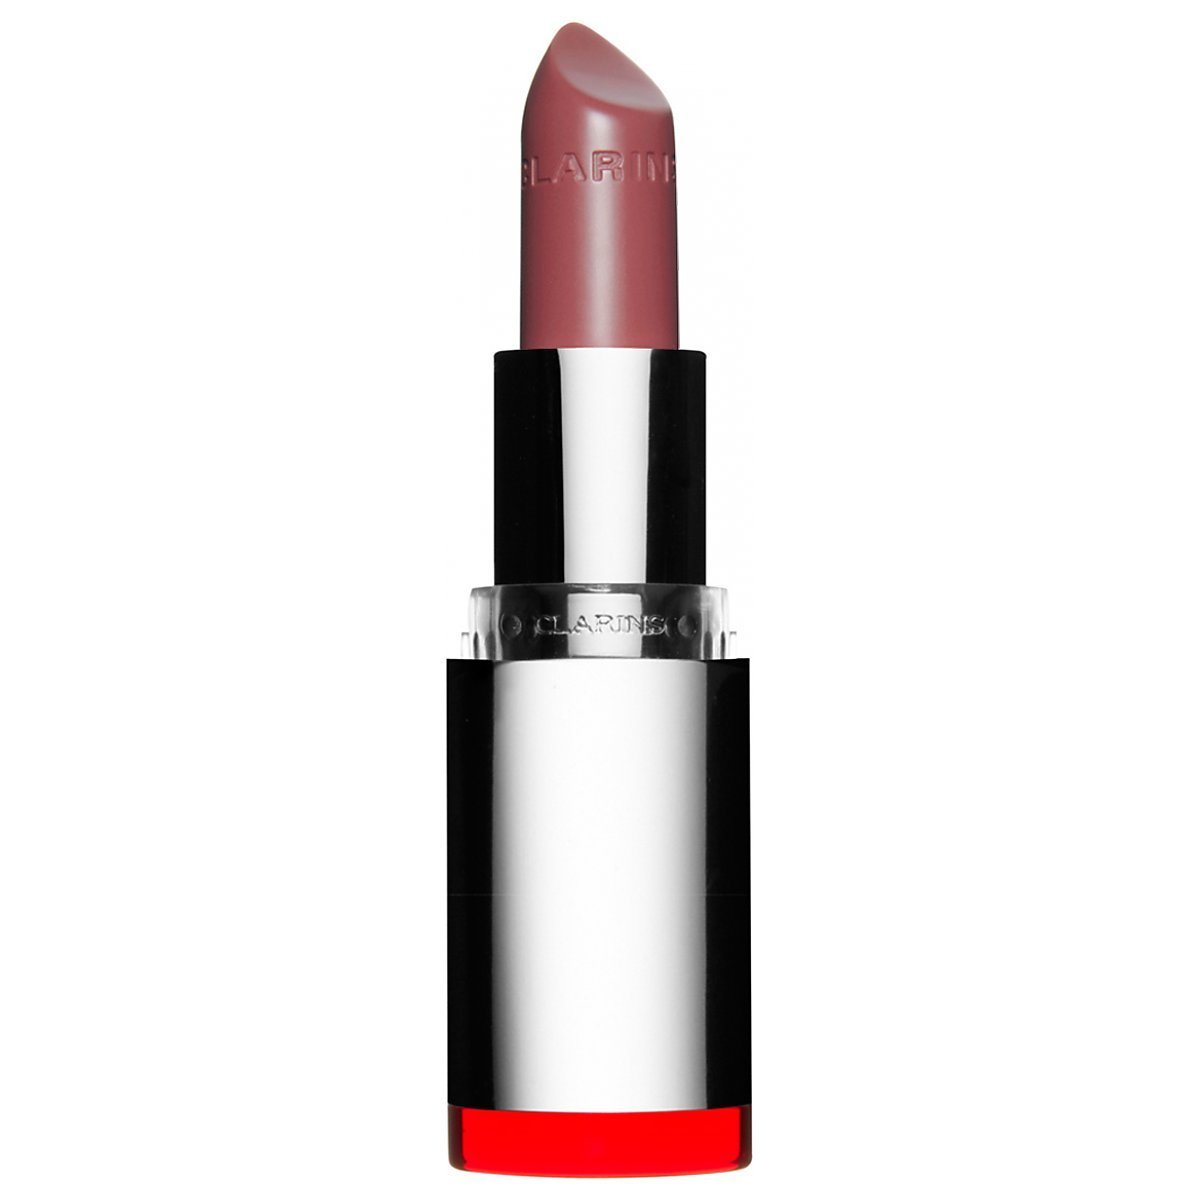 Clarins Joli Rouge Long Wearing Moisturizing Lipstick Pomadka 3 5g 708